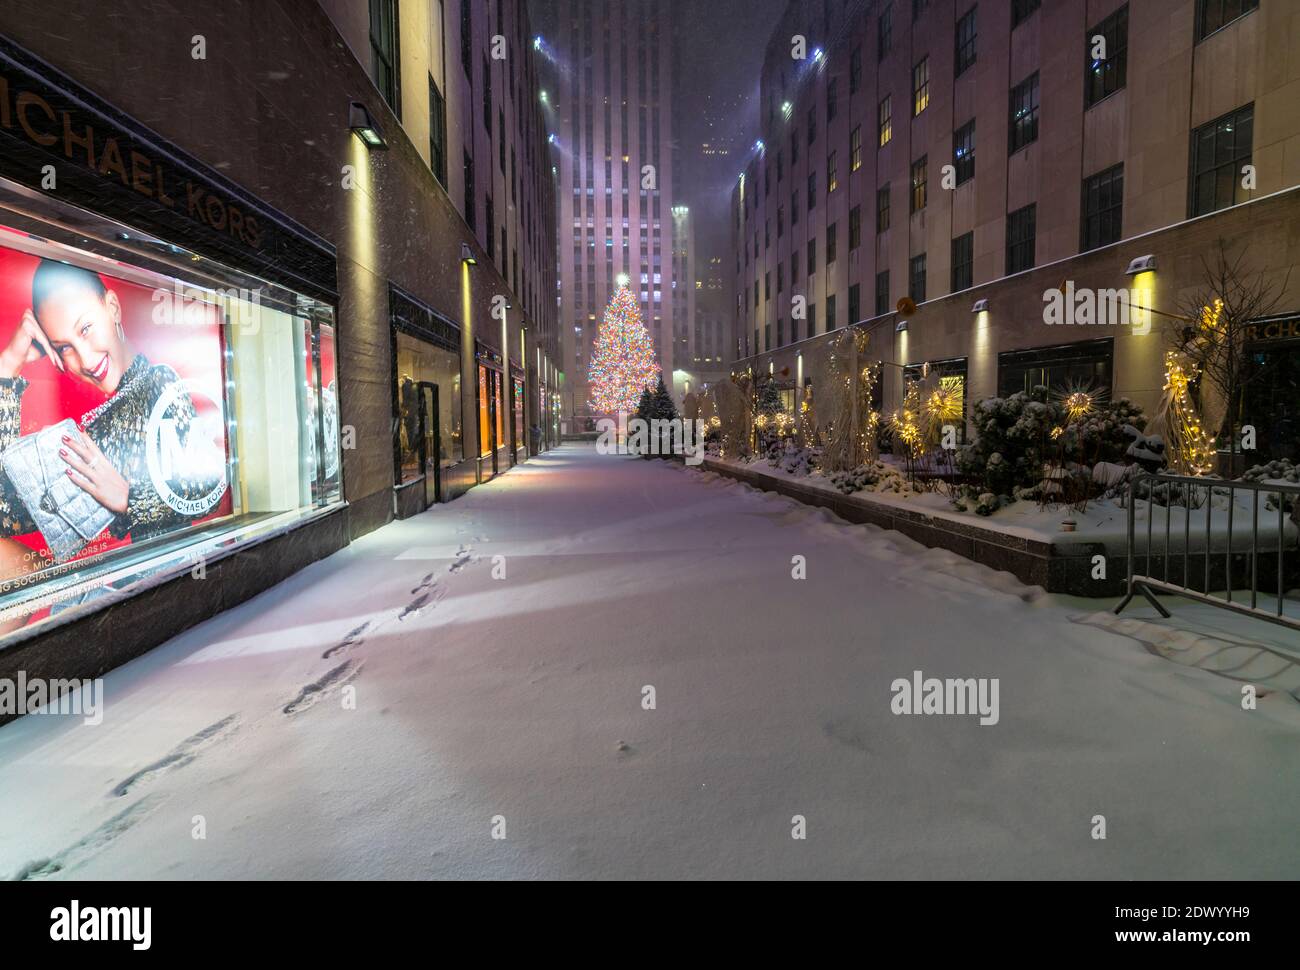 La première tempête de neige frappe l'arbre de Noël du Rockefeller Center lors de la COVID-19 Banque D'Images